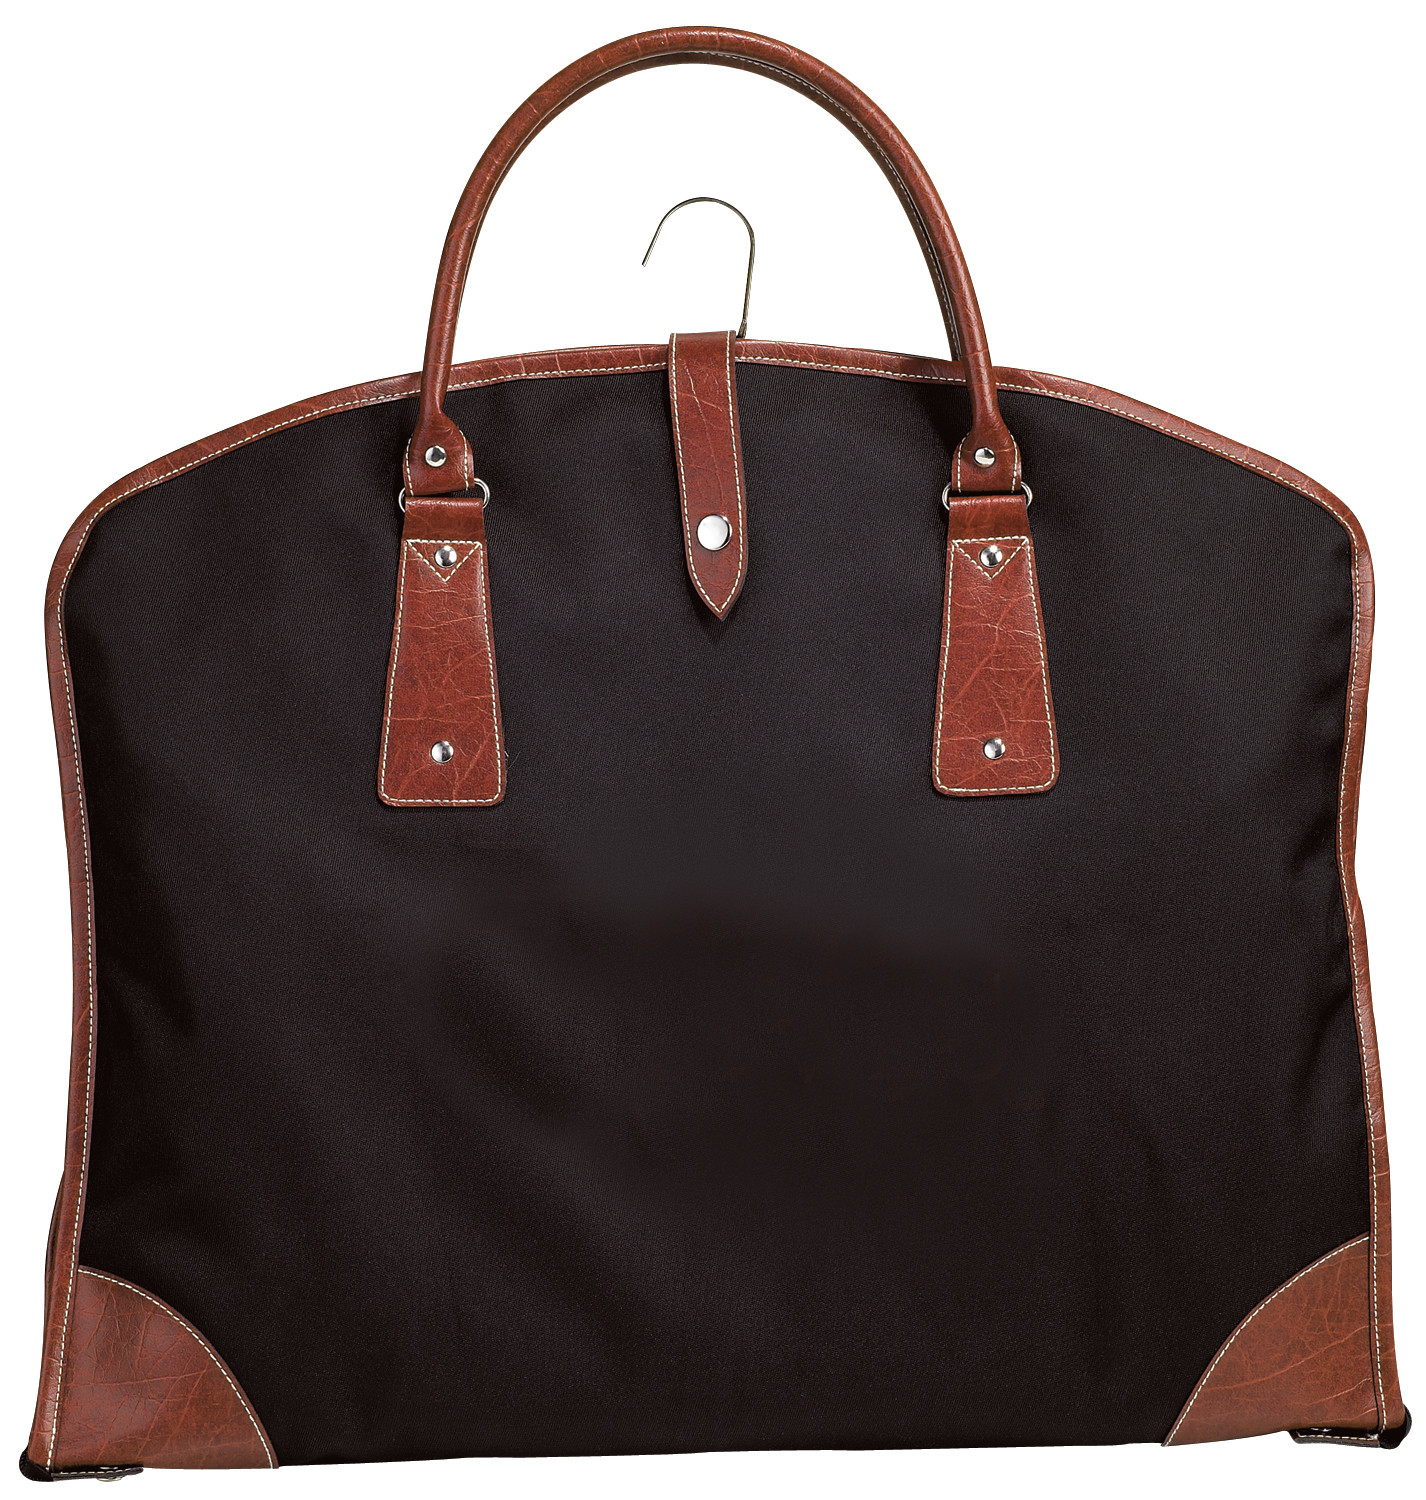 Garment Bags for Travel for Women, Stylish Garment